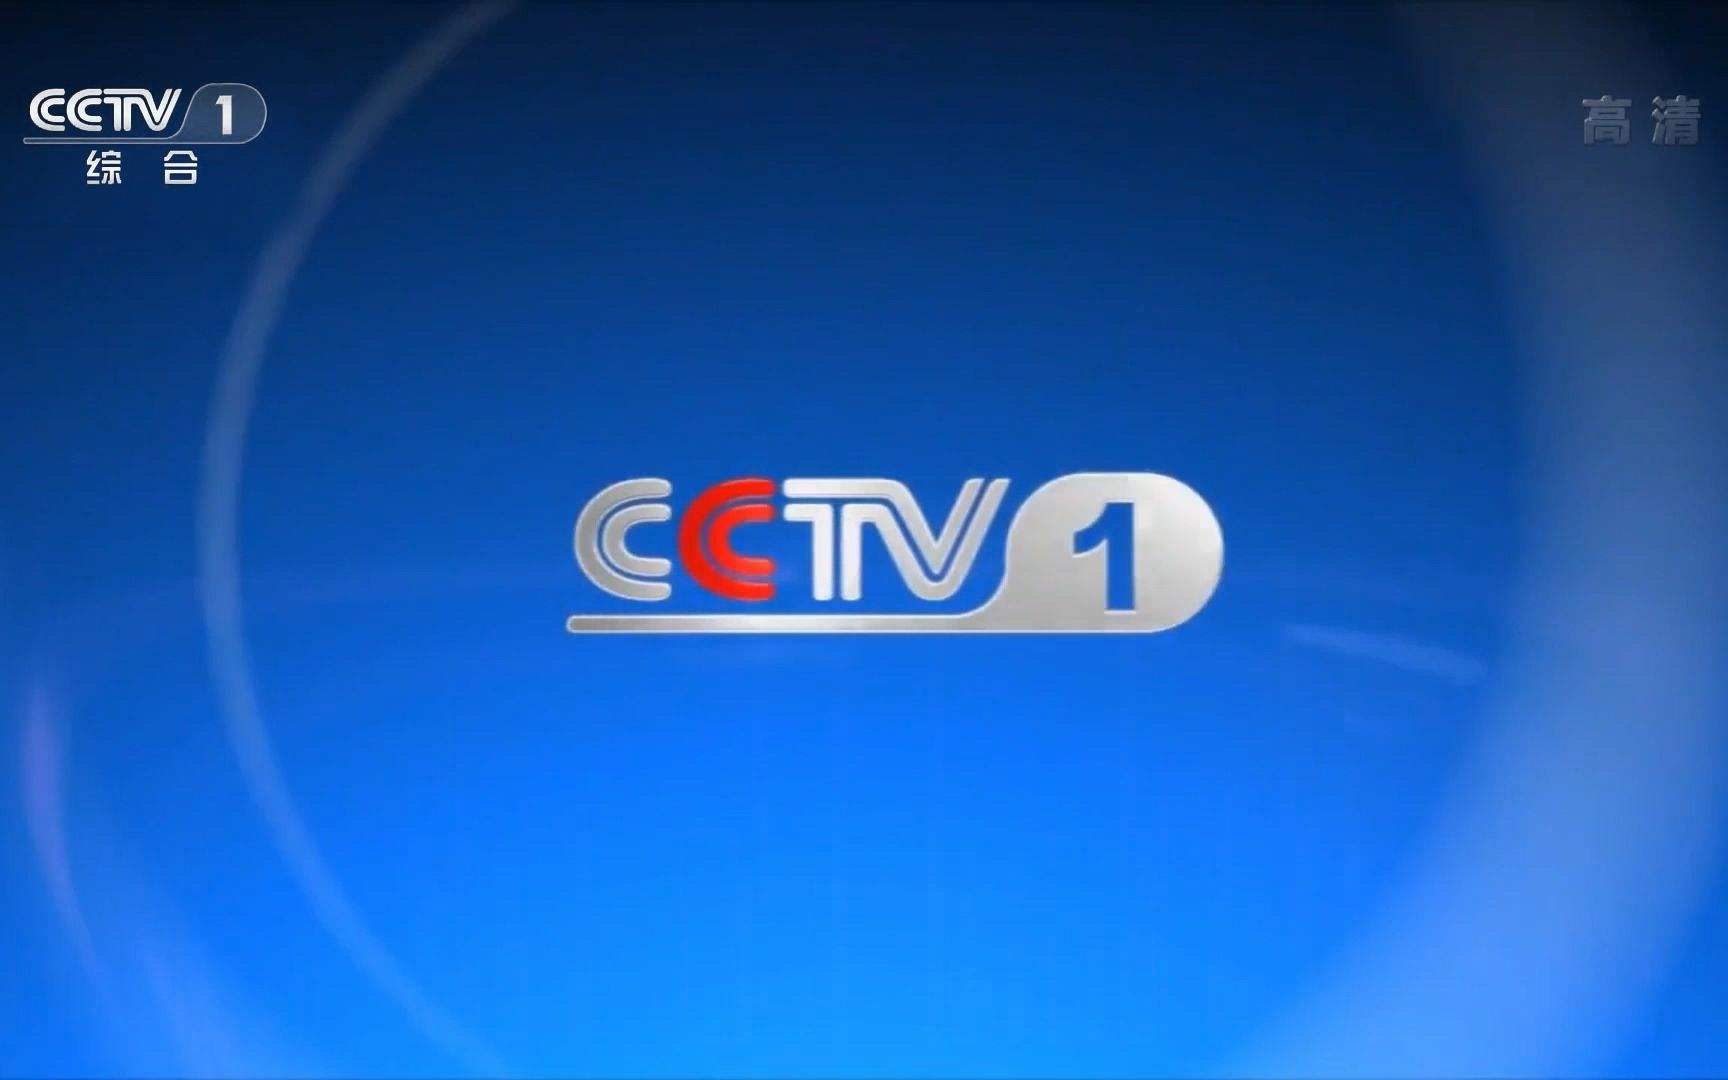 2022年央视CCTV-1全天时段广告刊例价格